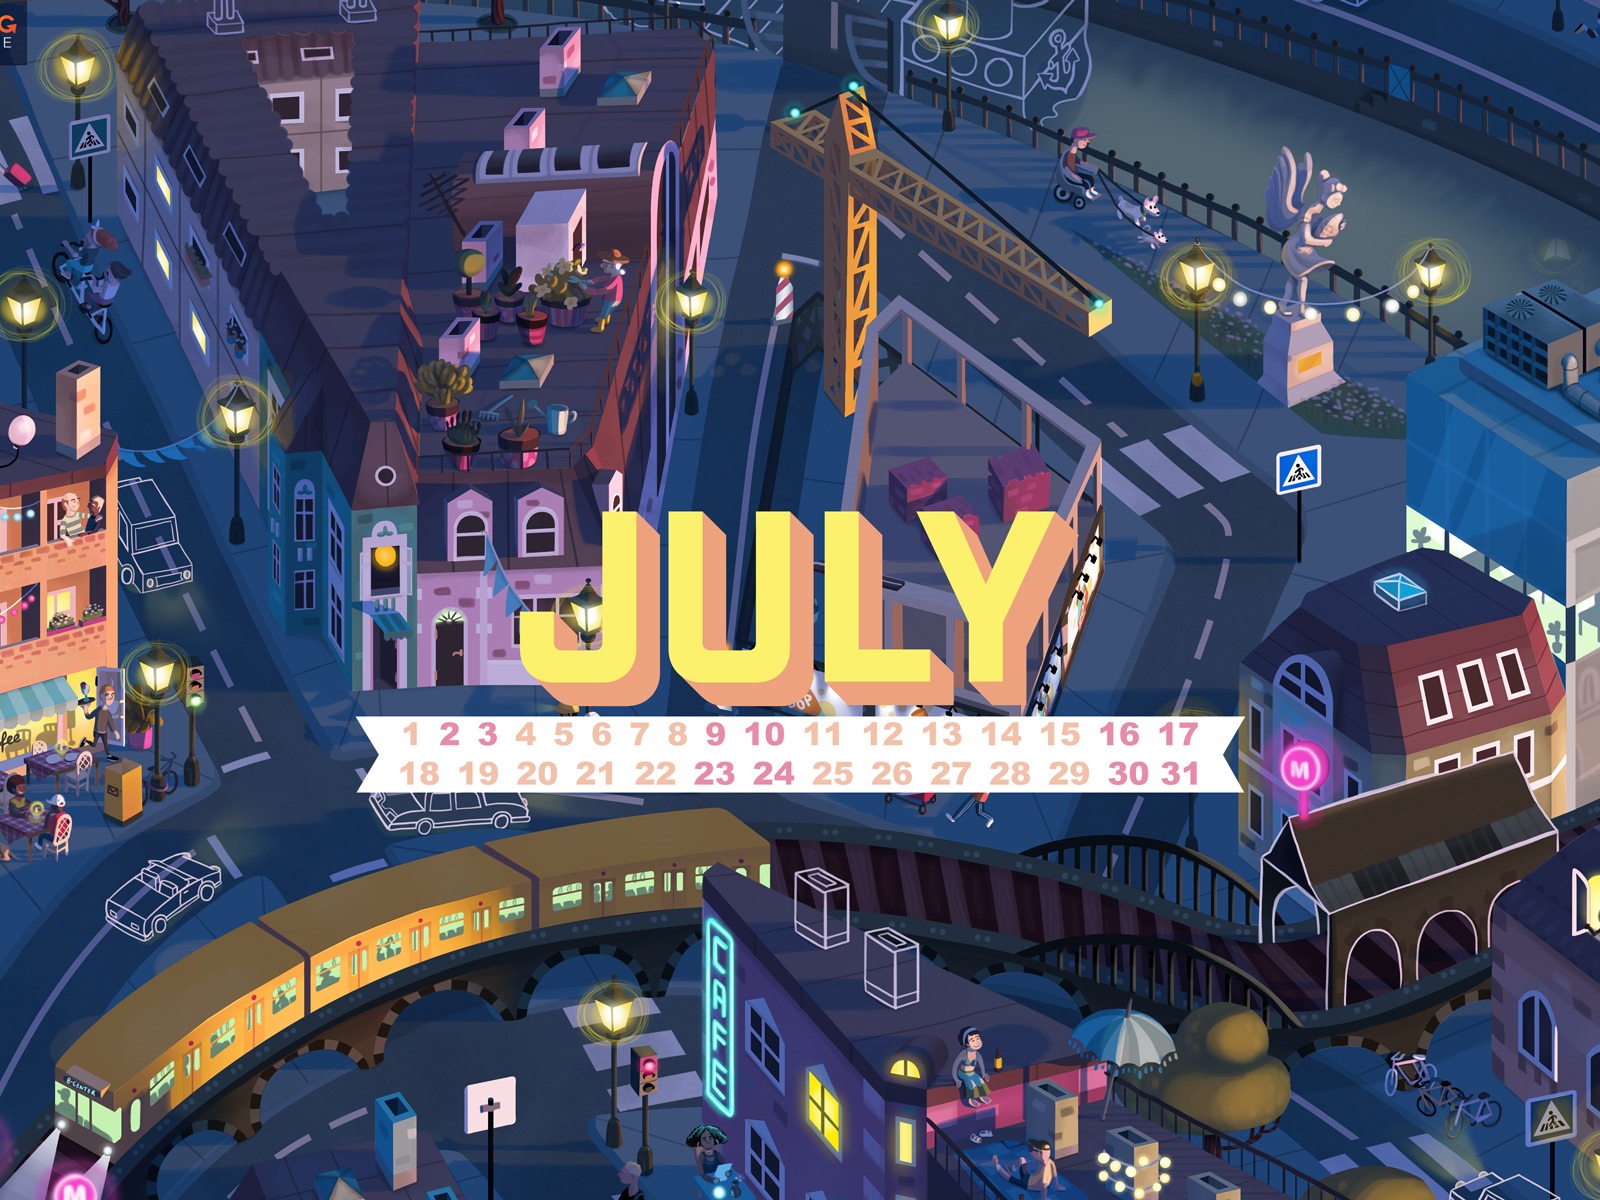 July 2016 calendar wallpaper (1) #1 - 1600x1200